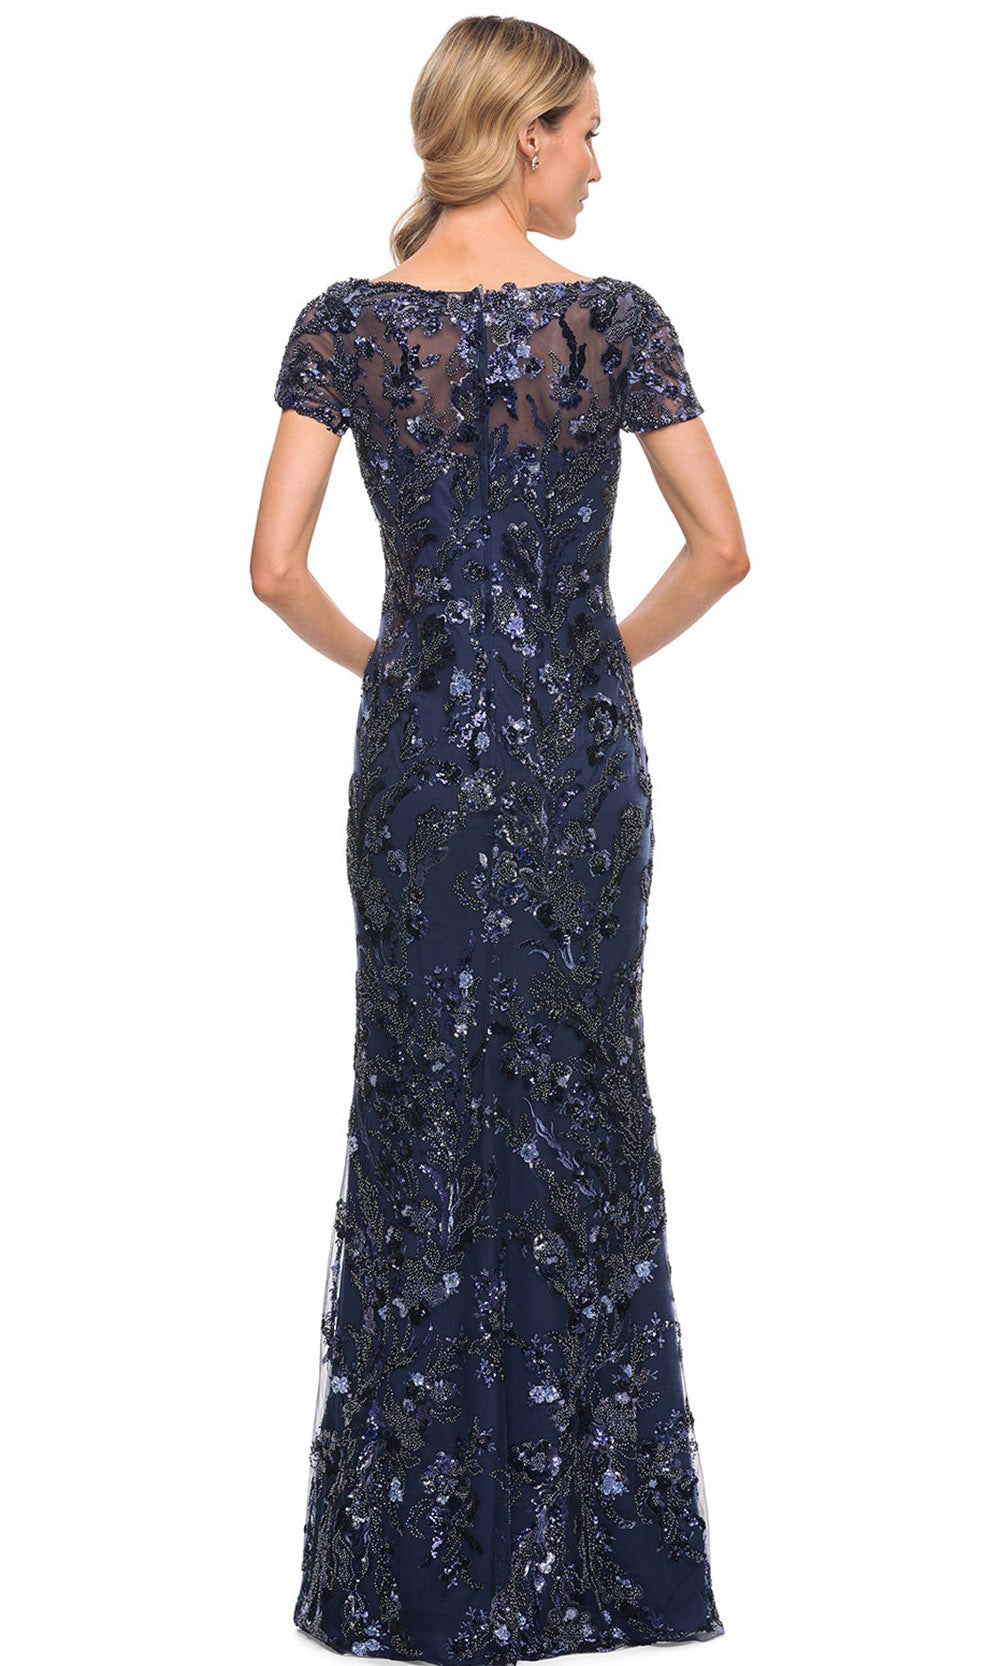 La Femme - 30375 Embellished Short Sleeves Sheath Dress In Blue